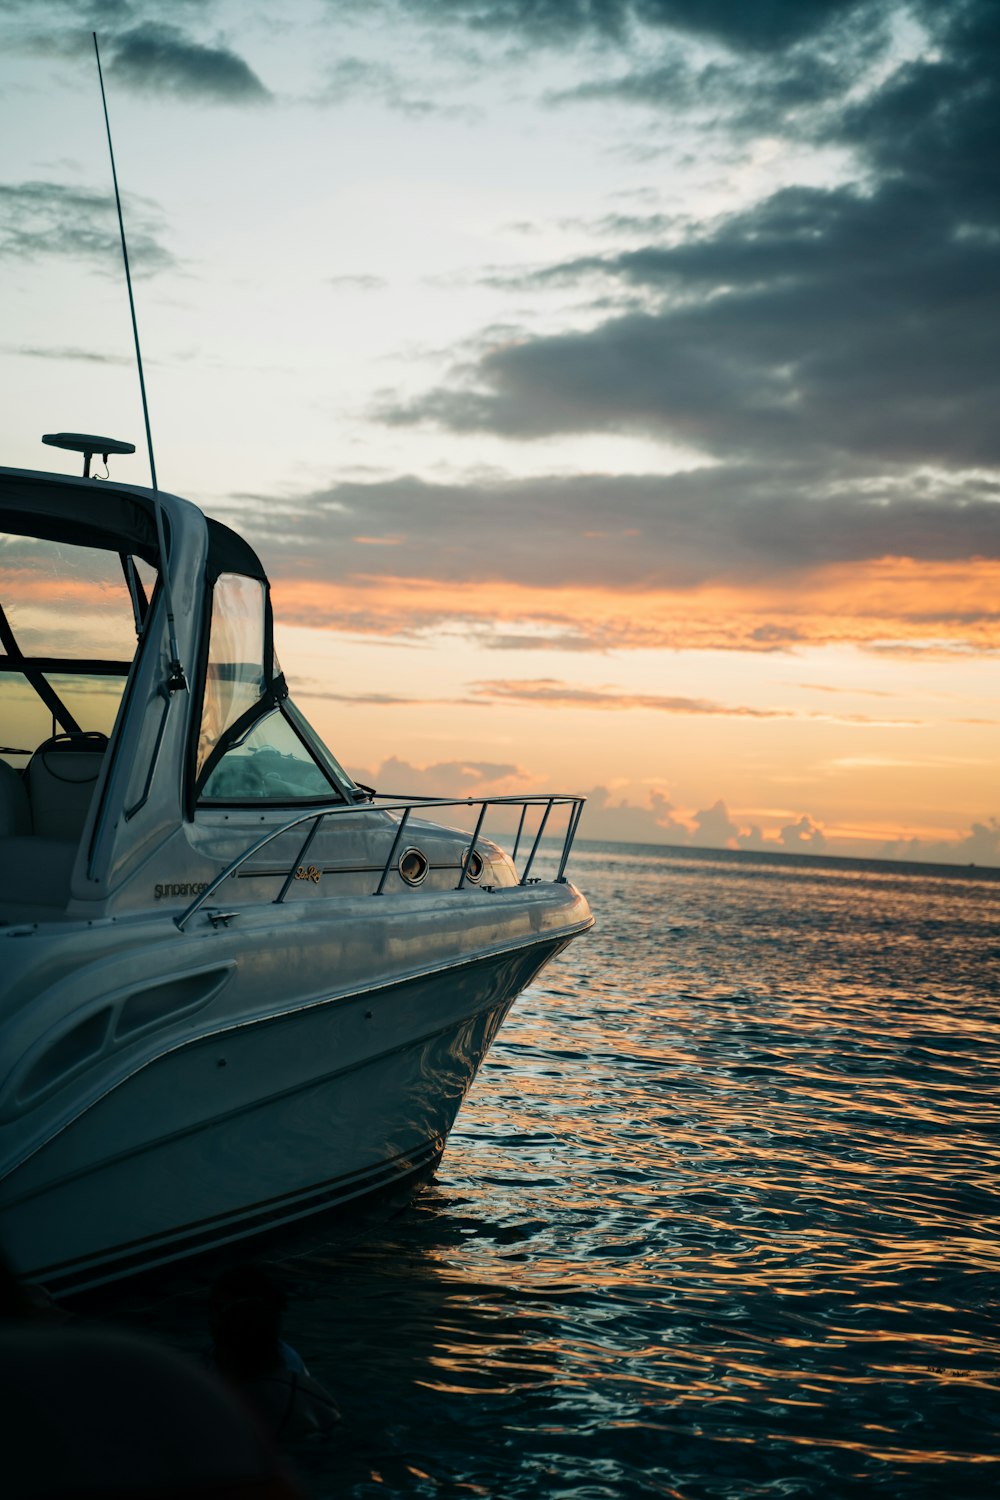 barco branco e azul no mar durante o pôr do sol